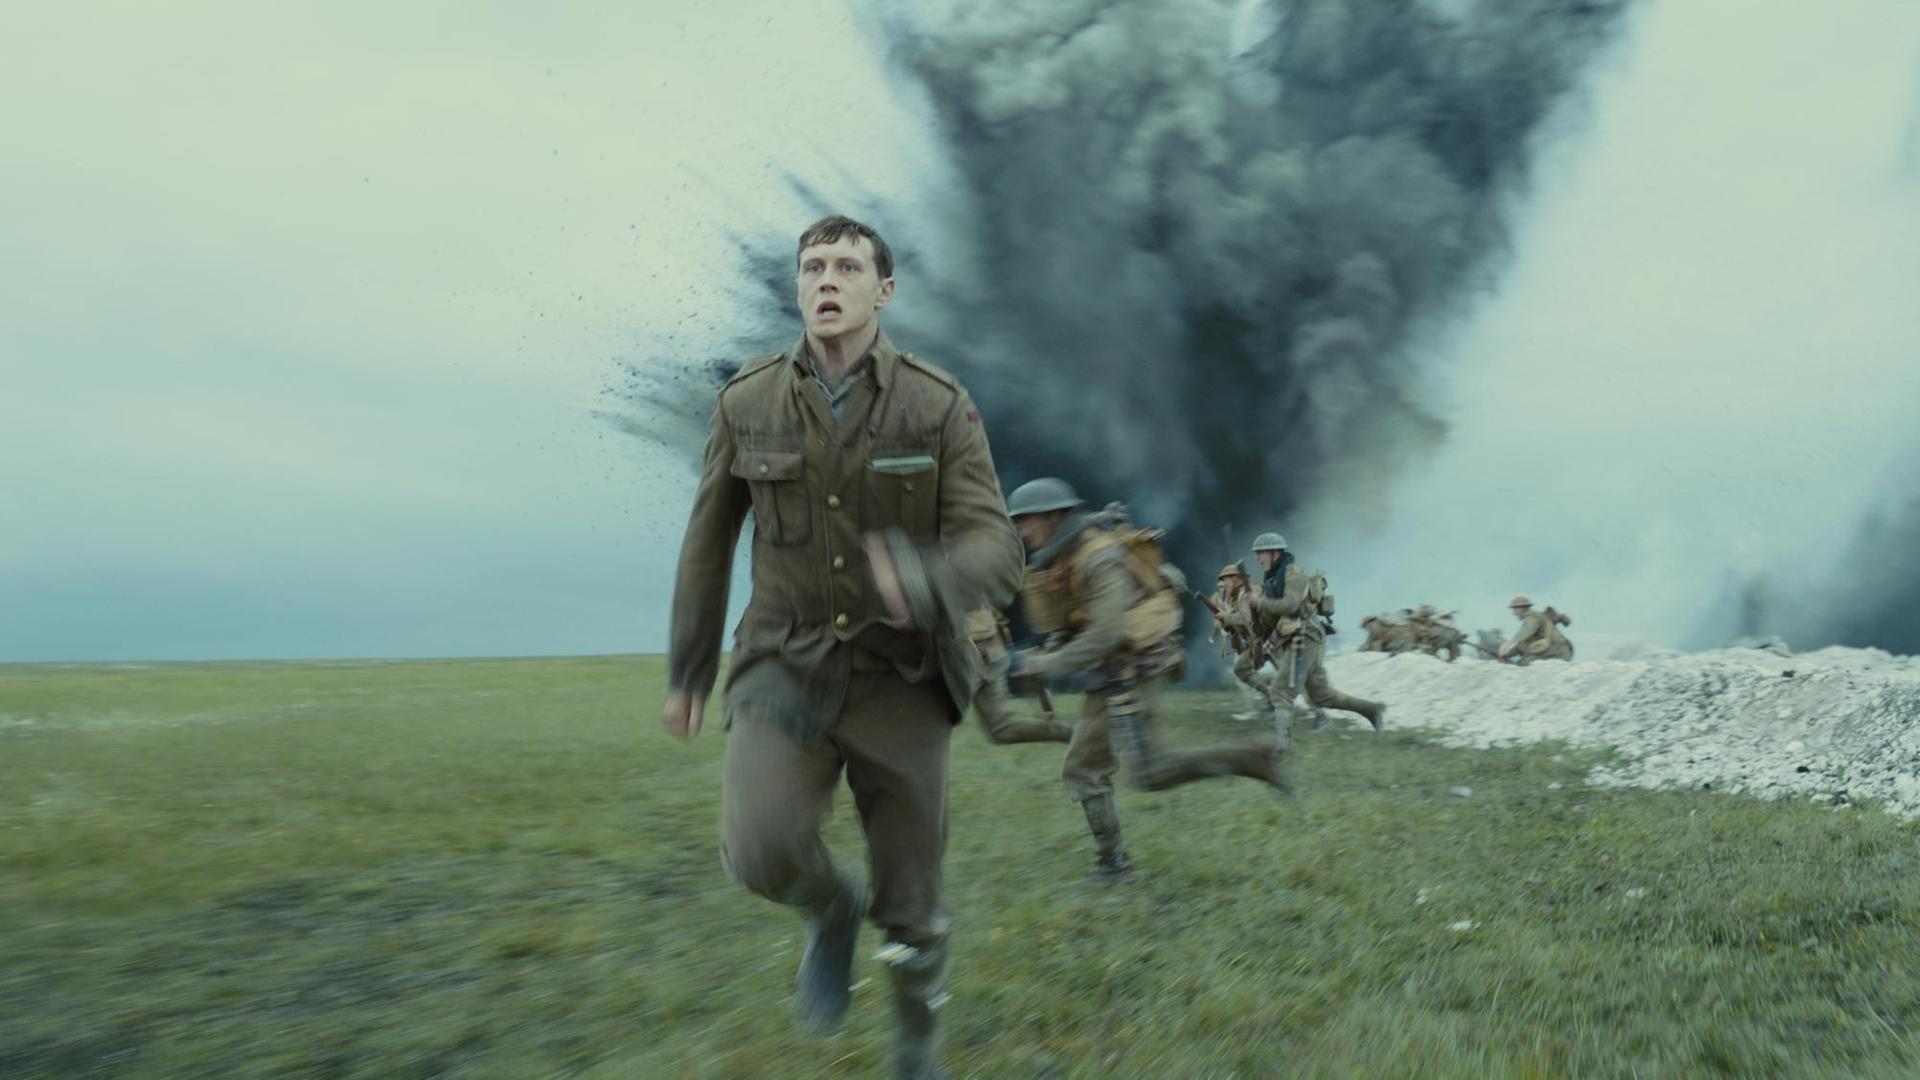 Eine Filmszene aus 1917 zeigt George MacKay als Soldat Schofield, der vor einer Explosion im Schützengraben davonläuft.